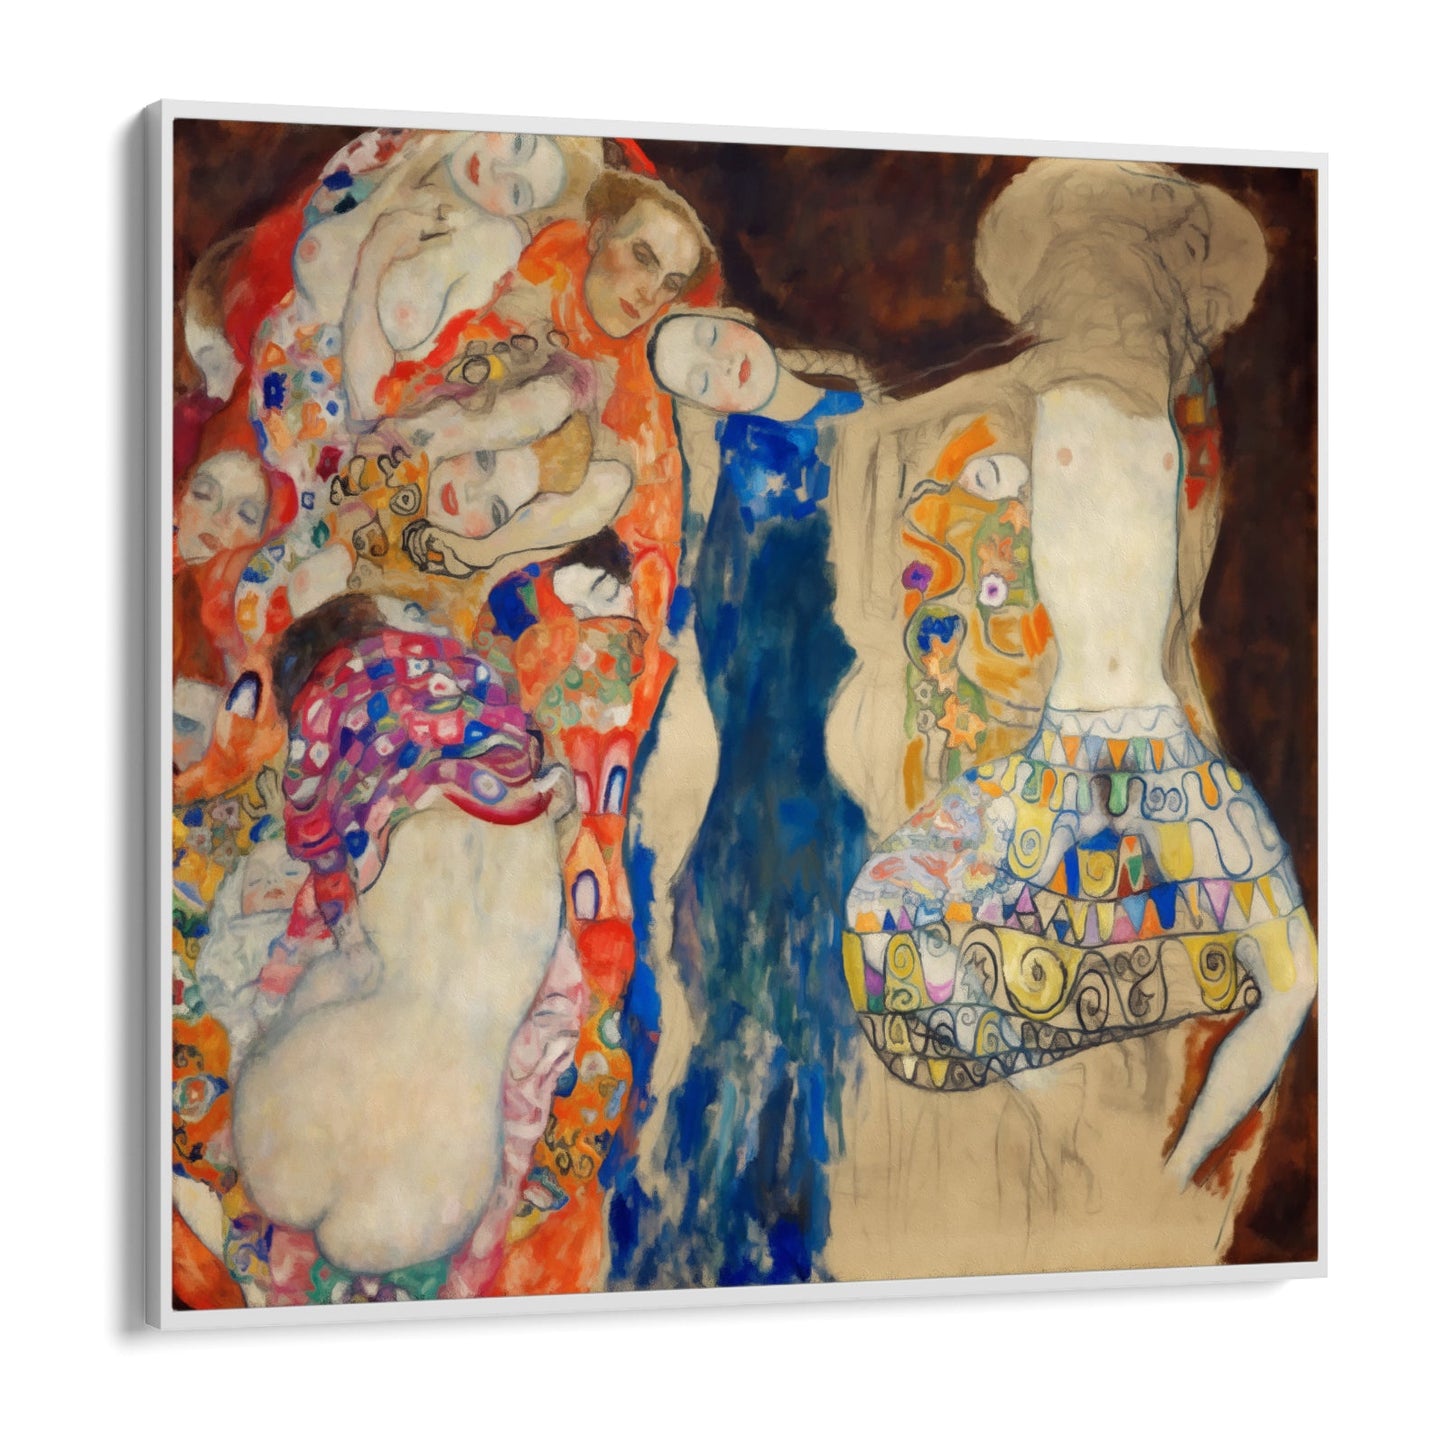 La novia, Klimt